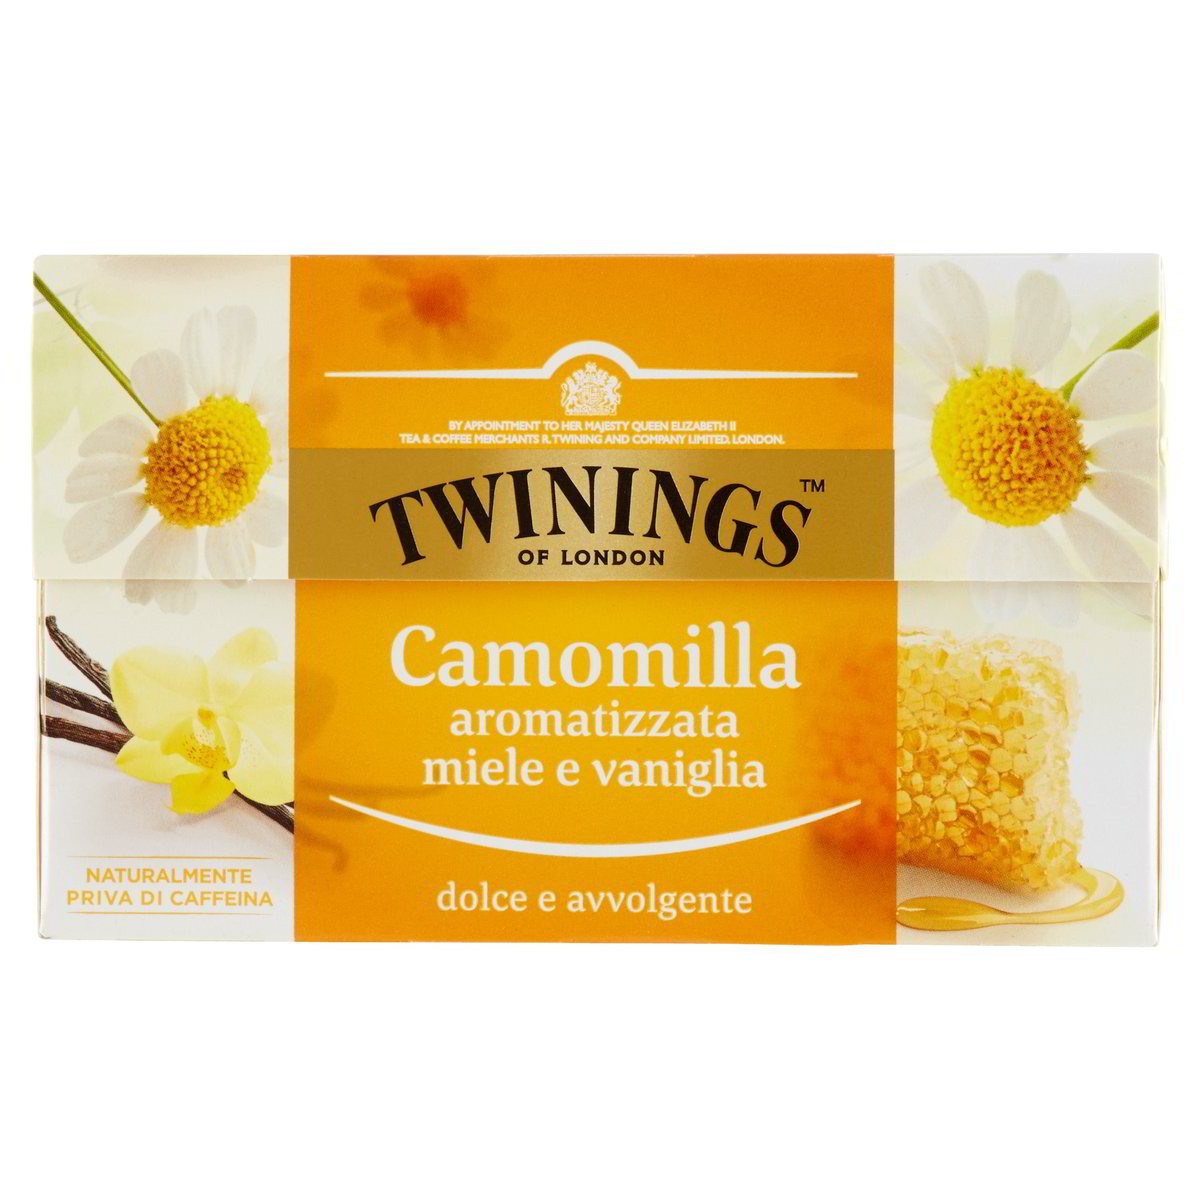 Twinings Camomilla aromatizzata dolce e avvolgente